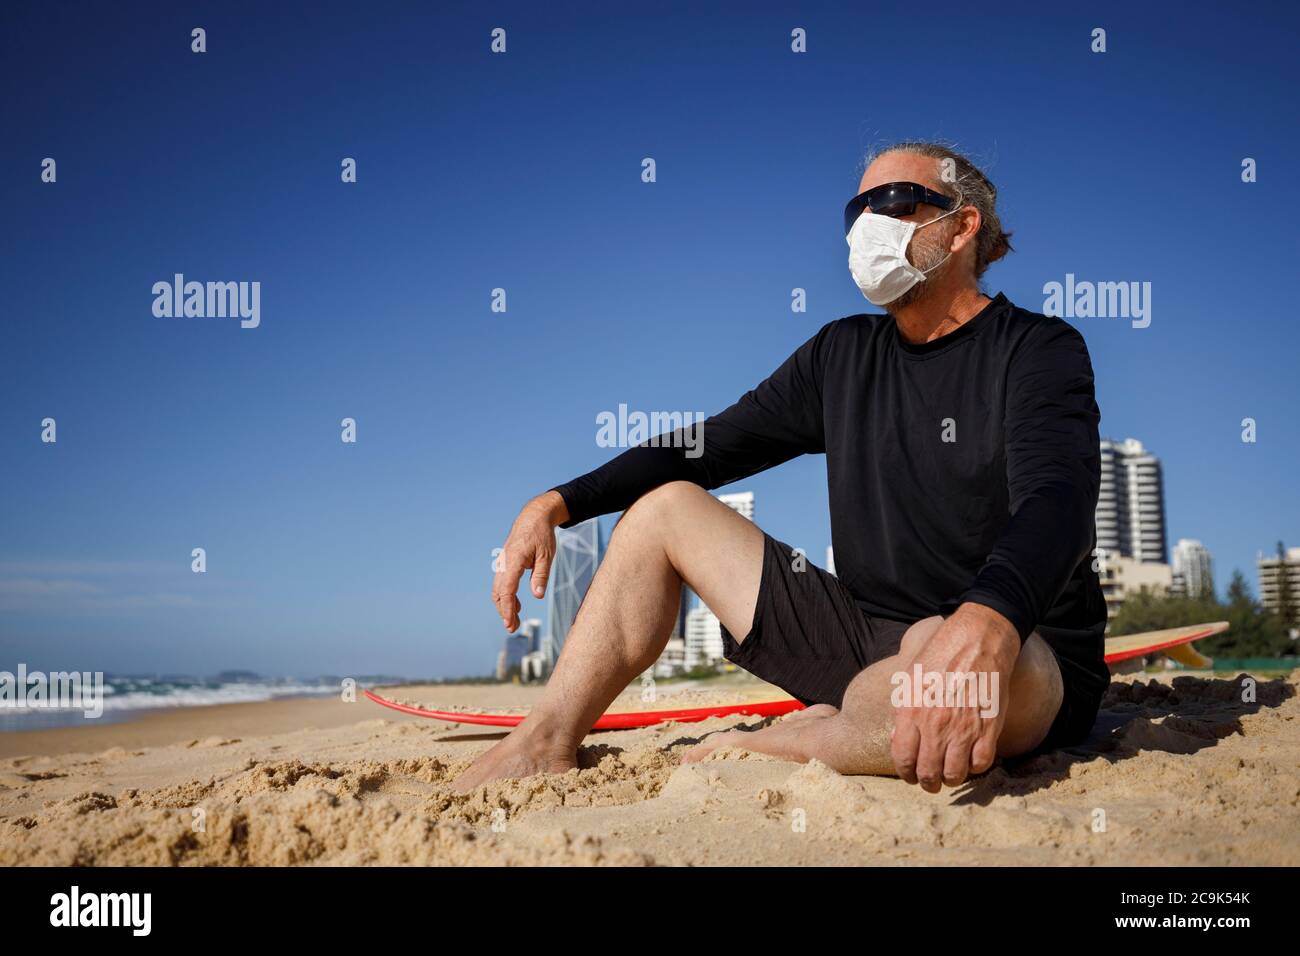 hombre con máscara médica sentado en la playa durante la pandemia de coronavirus covid 19, concepto de distancia social, surfista masculino usando máscara para la protección Foto de stock